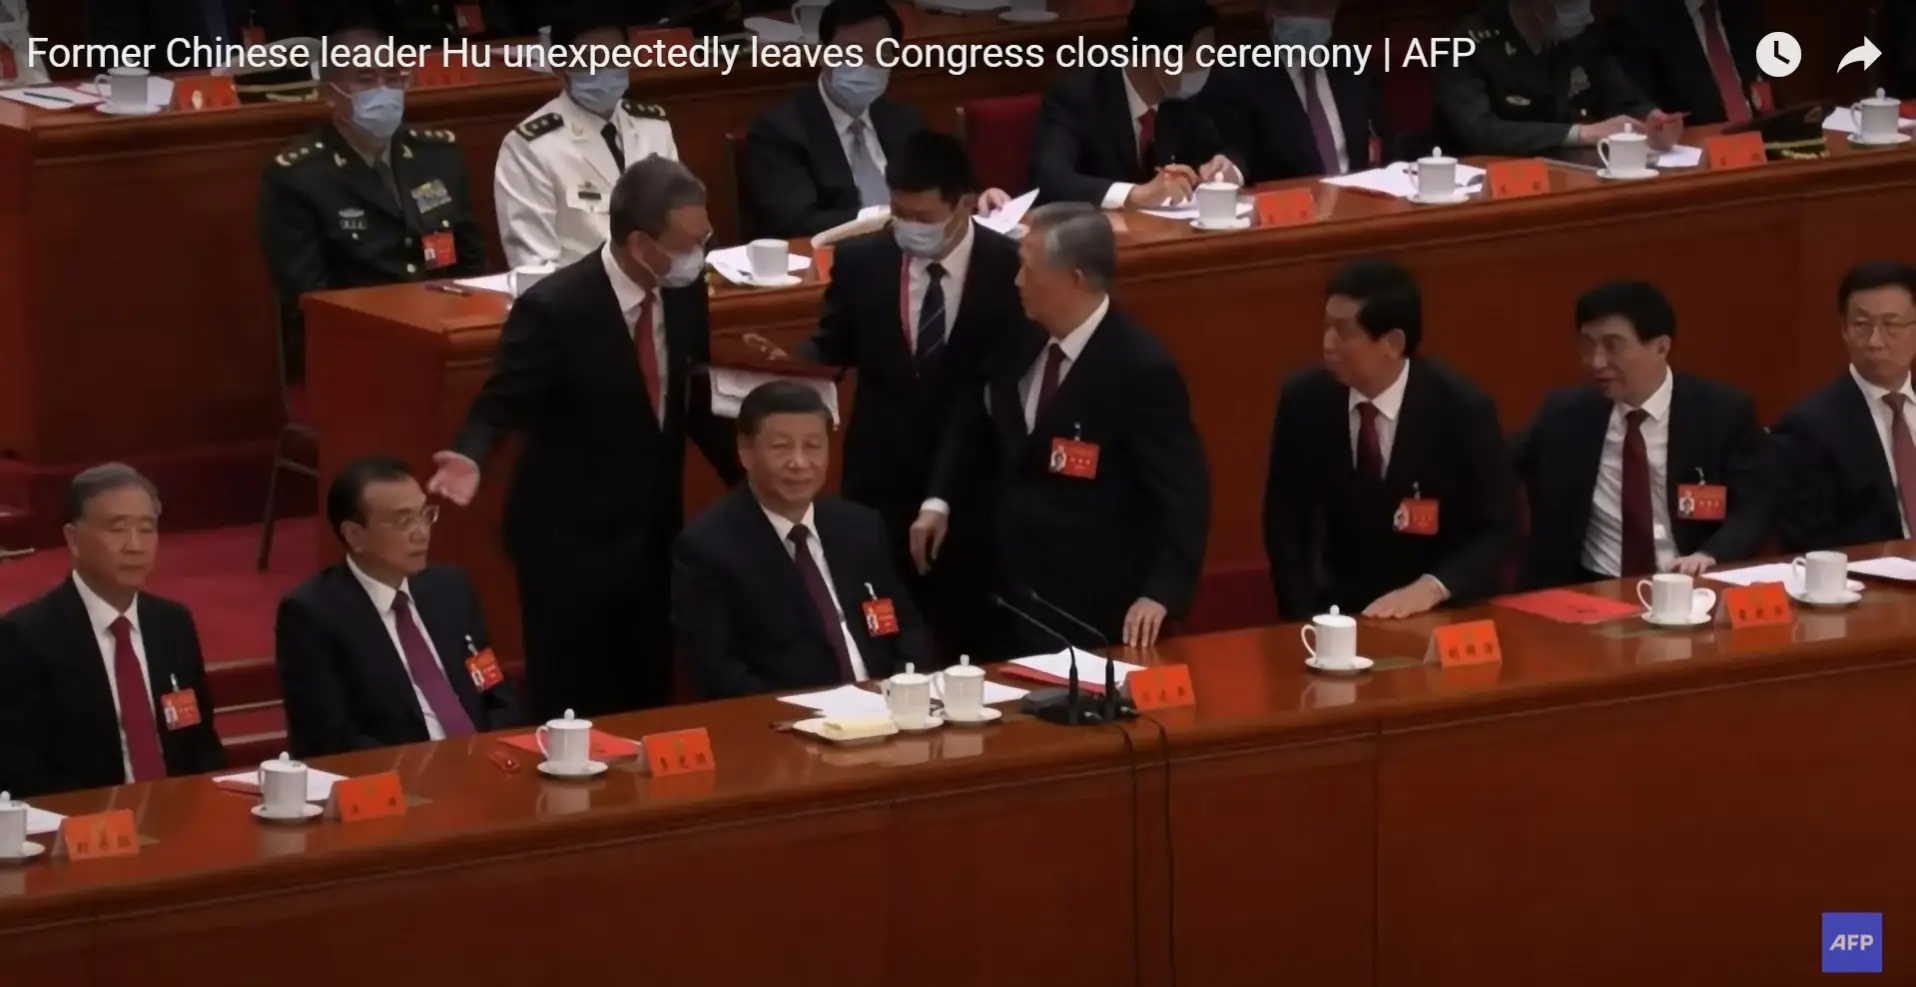 Frame do vídeo da Agência AFP mostra o momento em que Hu Jintao é acompanhado para fora da sala onde decorre o congresso